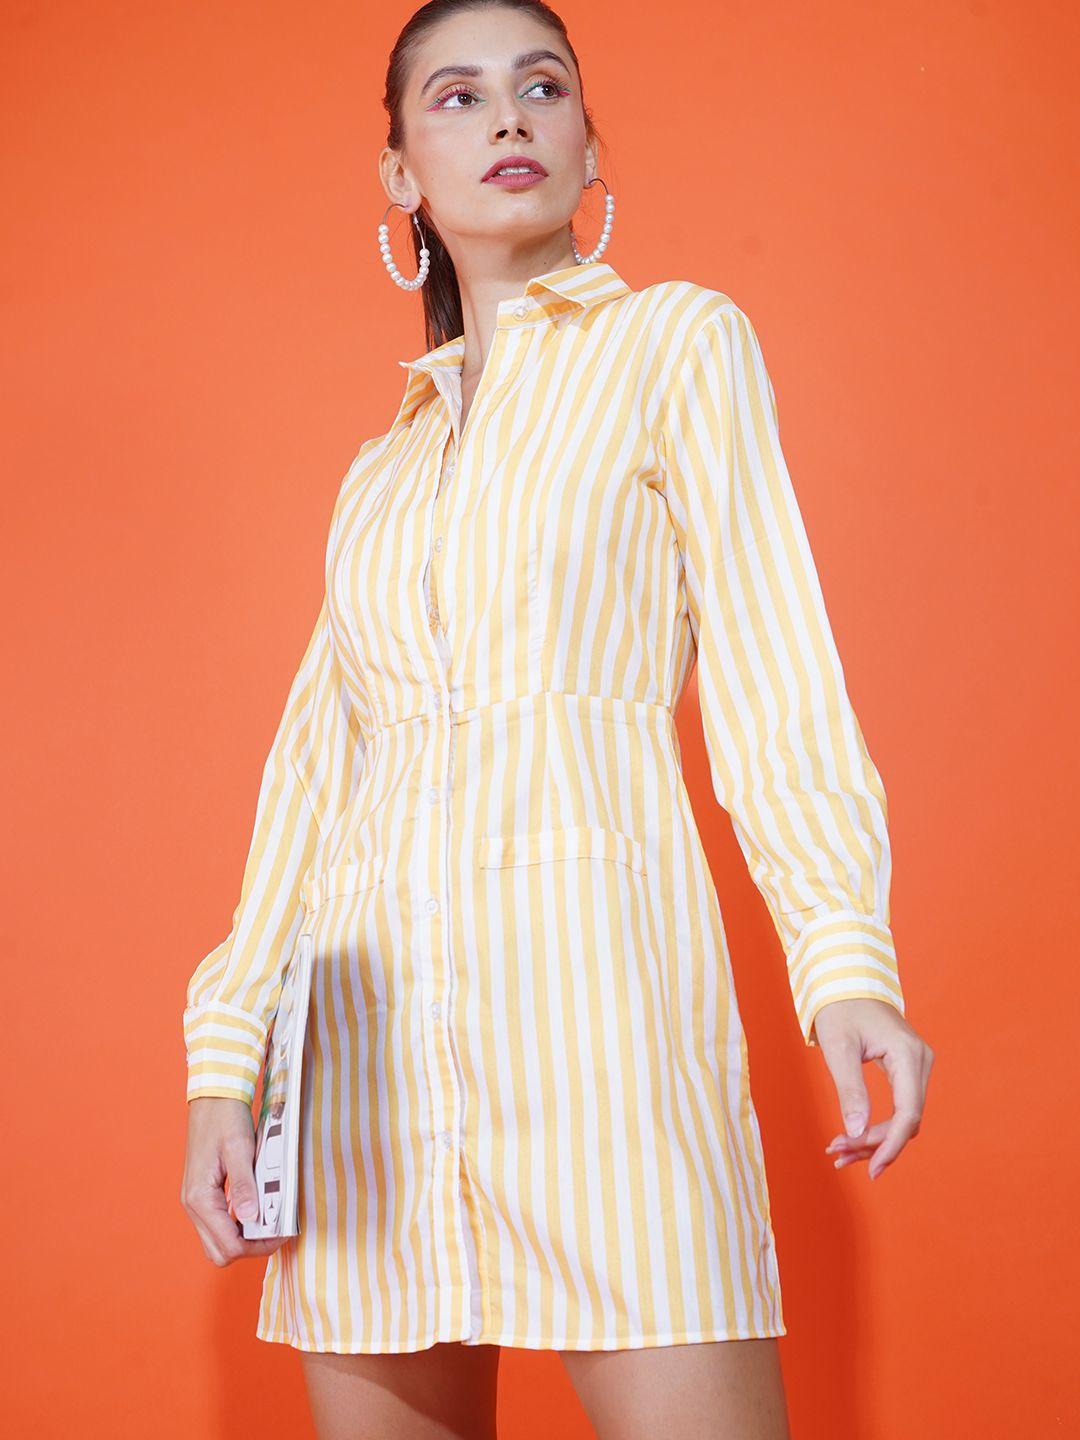 stylecast x hersheinbox women yellow & white striped shirt dress